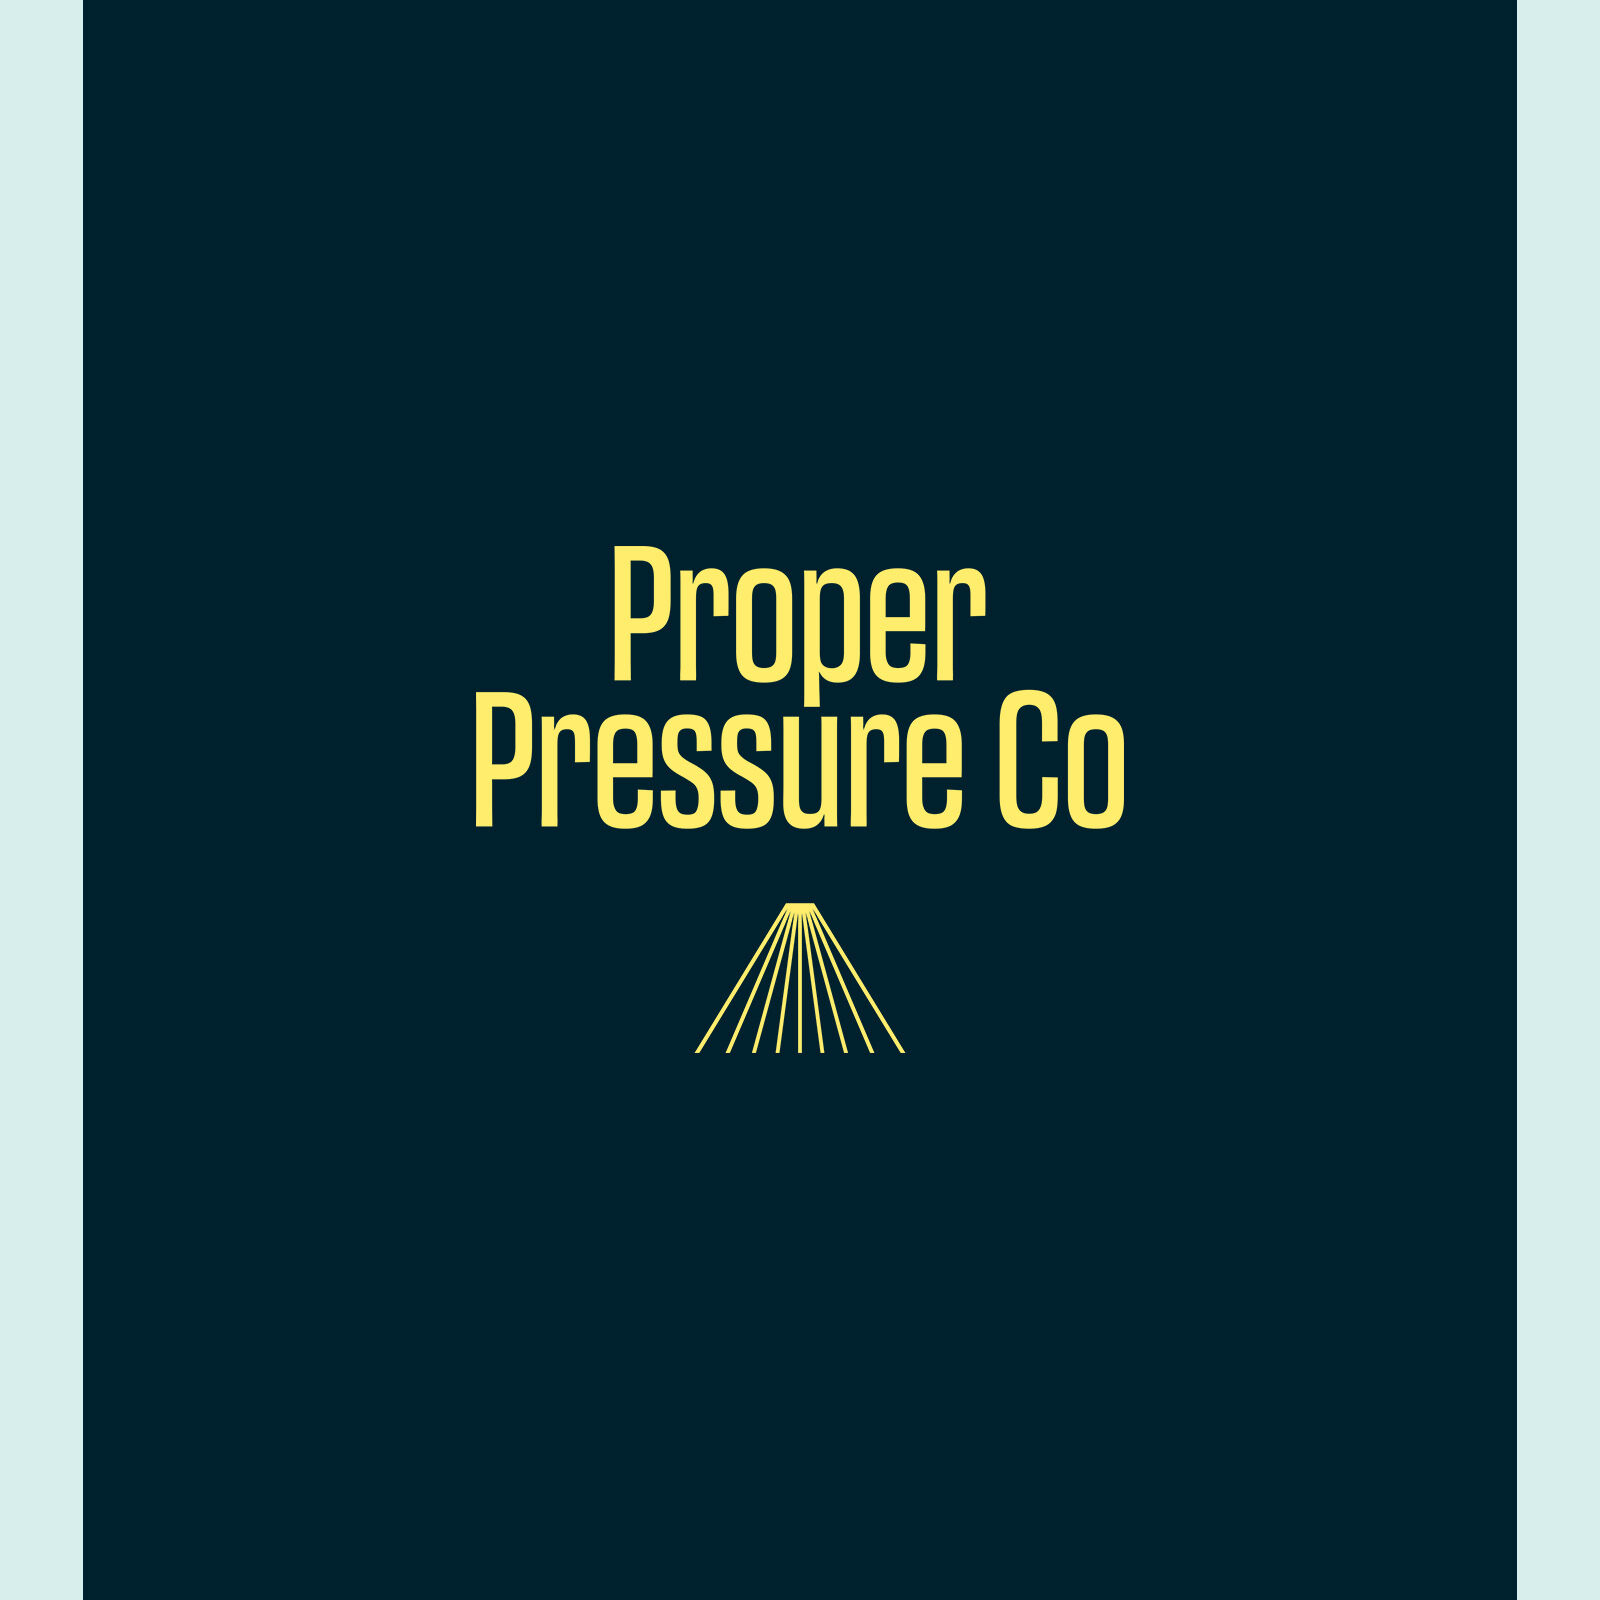 Proper Pressure Co branding and website design by Leysa Flores Design